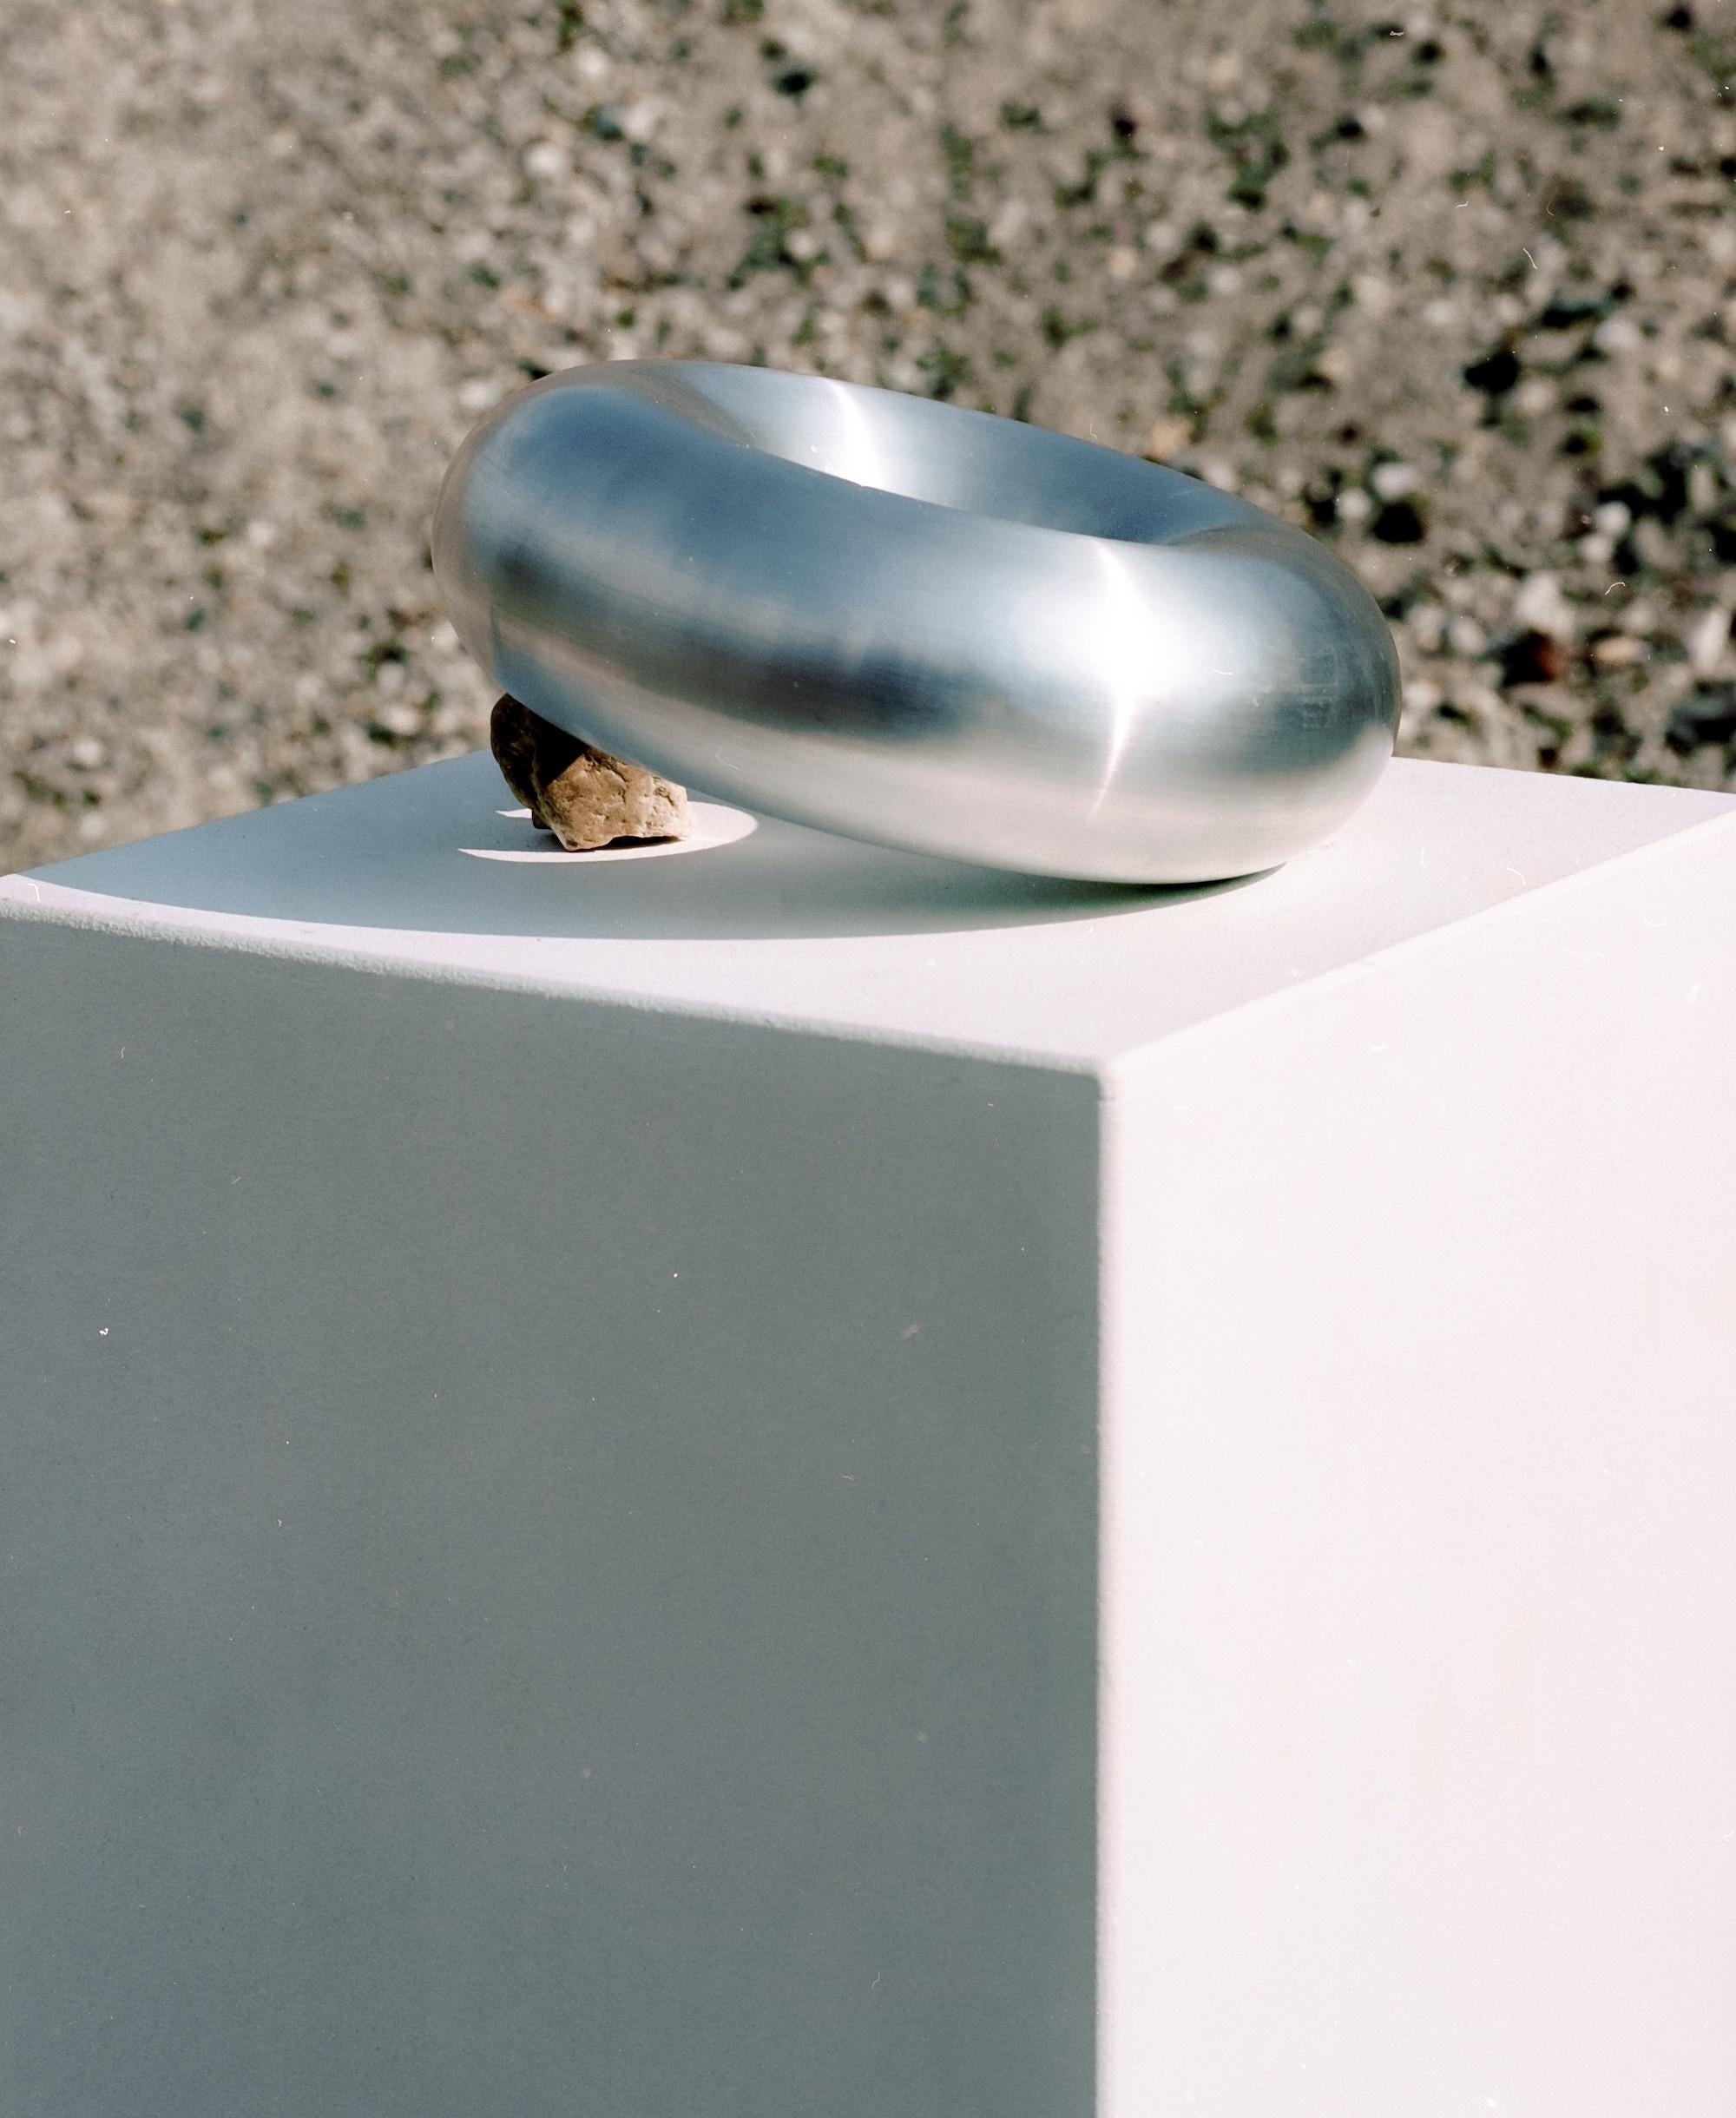 Sculpture de table en forme d'anneau par VAUST
Édition ouverte
Dimensions : D 18,2 x H 6 cm
Matériaux : aluminium massif
Également disponible : Une sélection de matériaux personnalisés peut être proposée sur demande et après approbation du